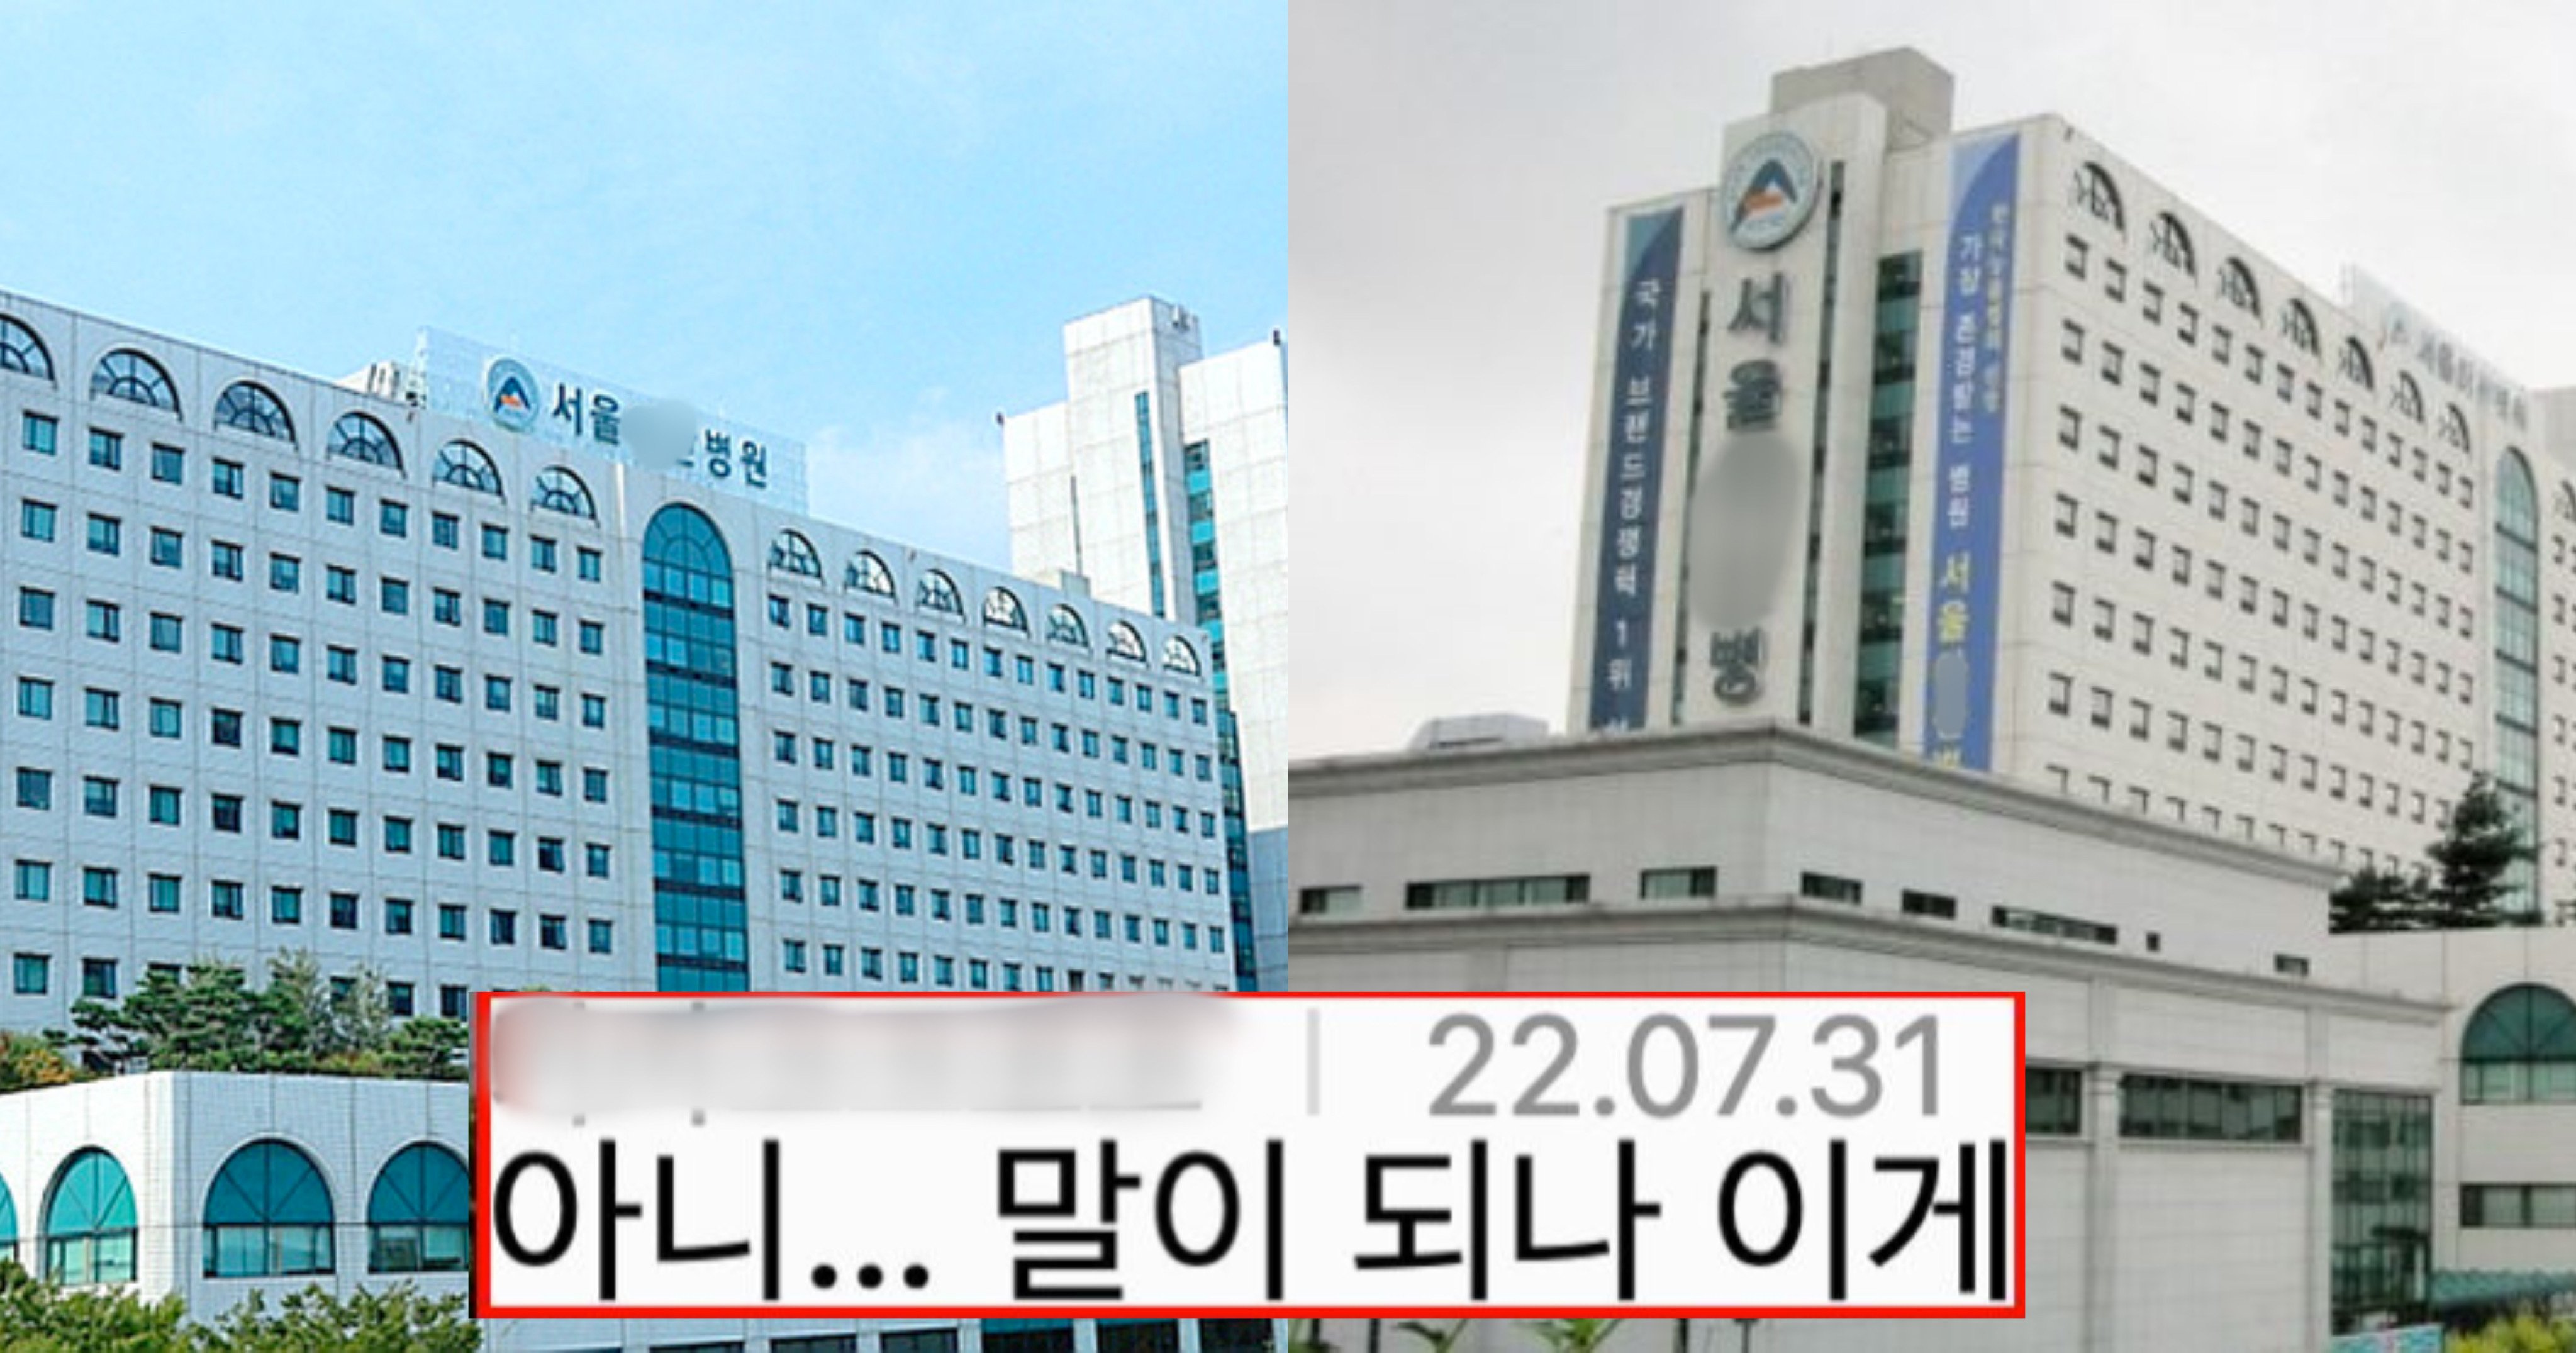 3b977860 0d7b 4bad b5b3 fb184af950f5.jpeg?resize=412,232 - 이번에 서울 아X병원에서 벌어진 충격적인 사건